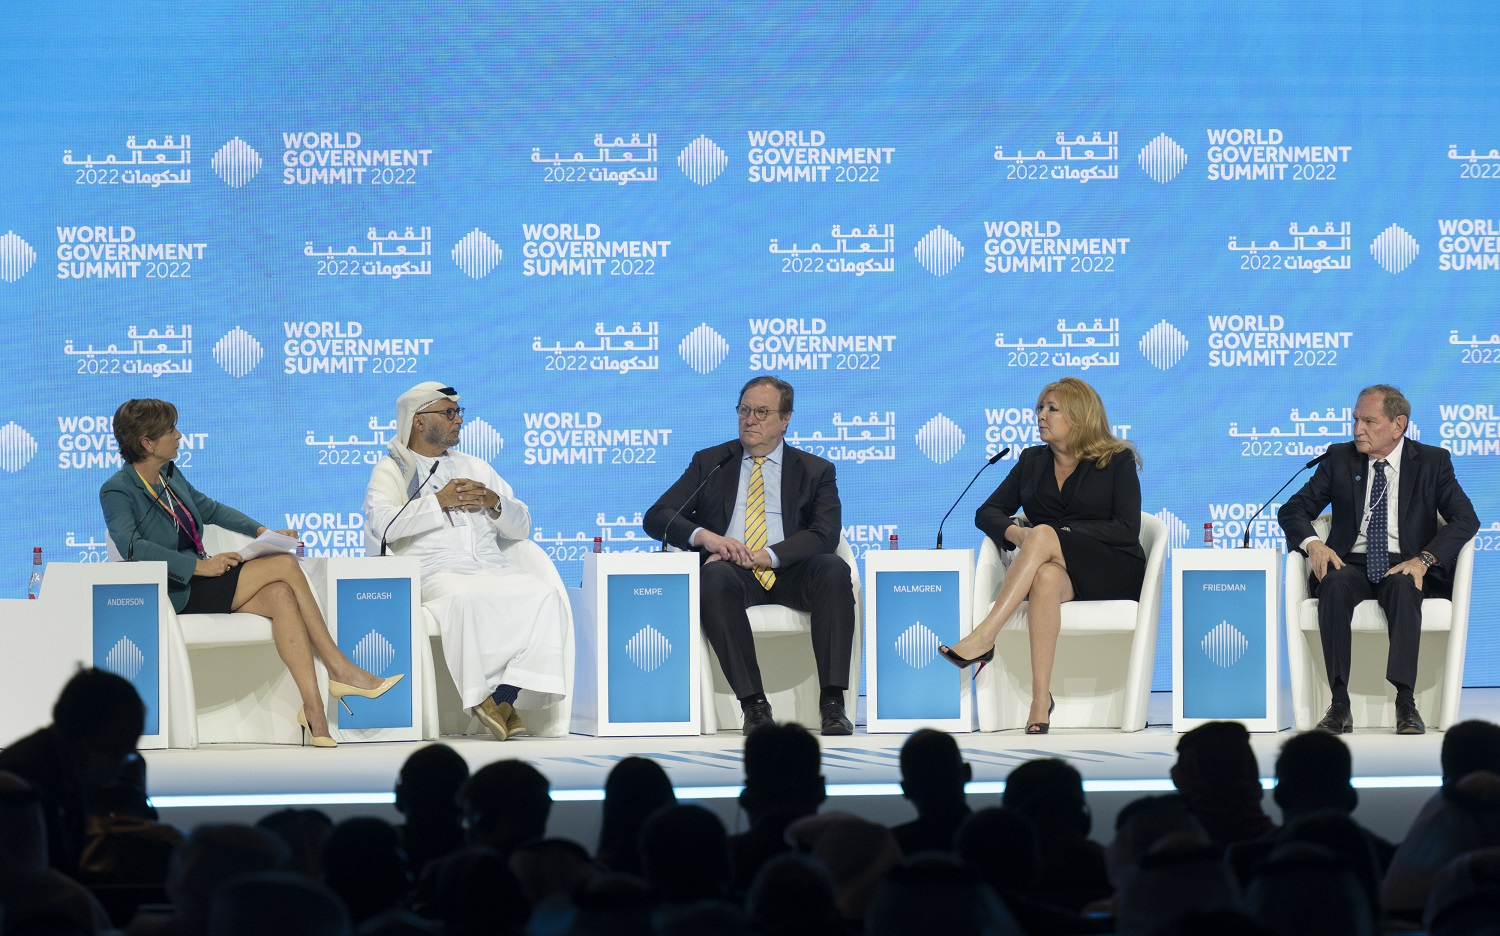 La promessa di nuovi orizzonti stimola il dialogo al World Government Summit  2022 | Business Wire